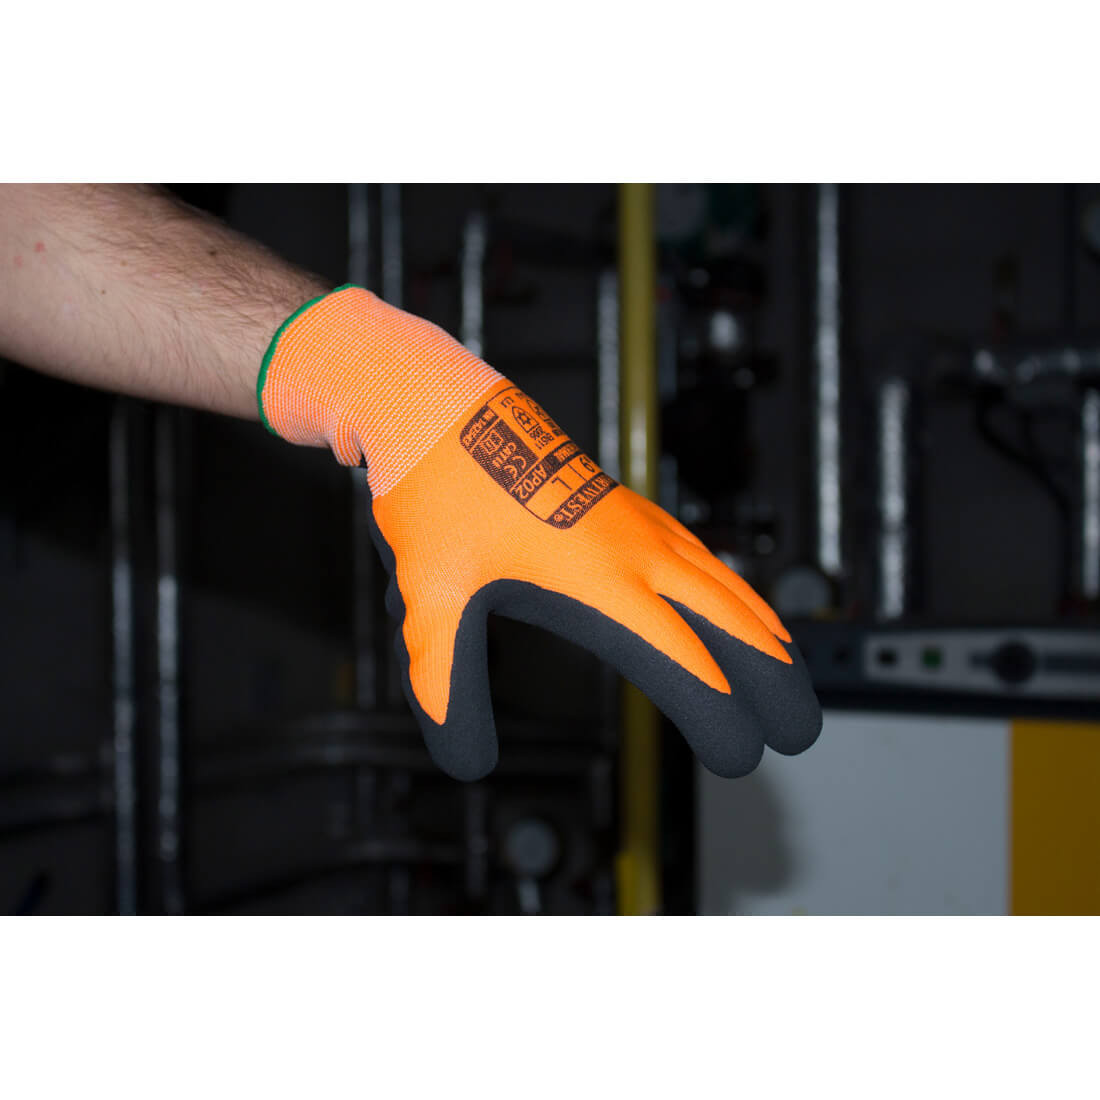 Thermo Pro Ultra Handschuh - Arbeitschutz